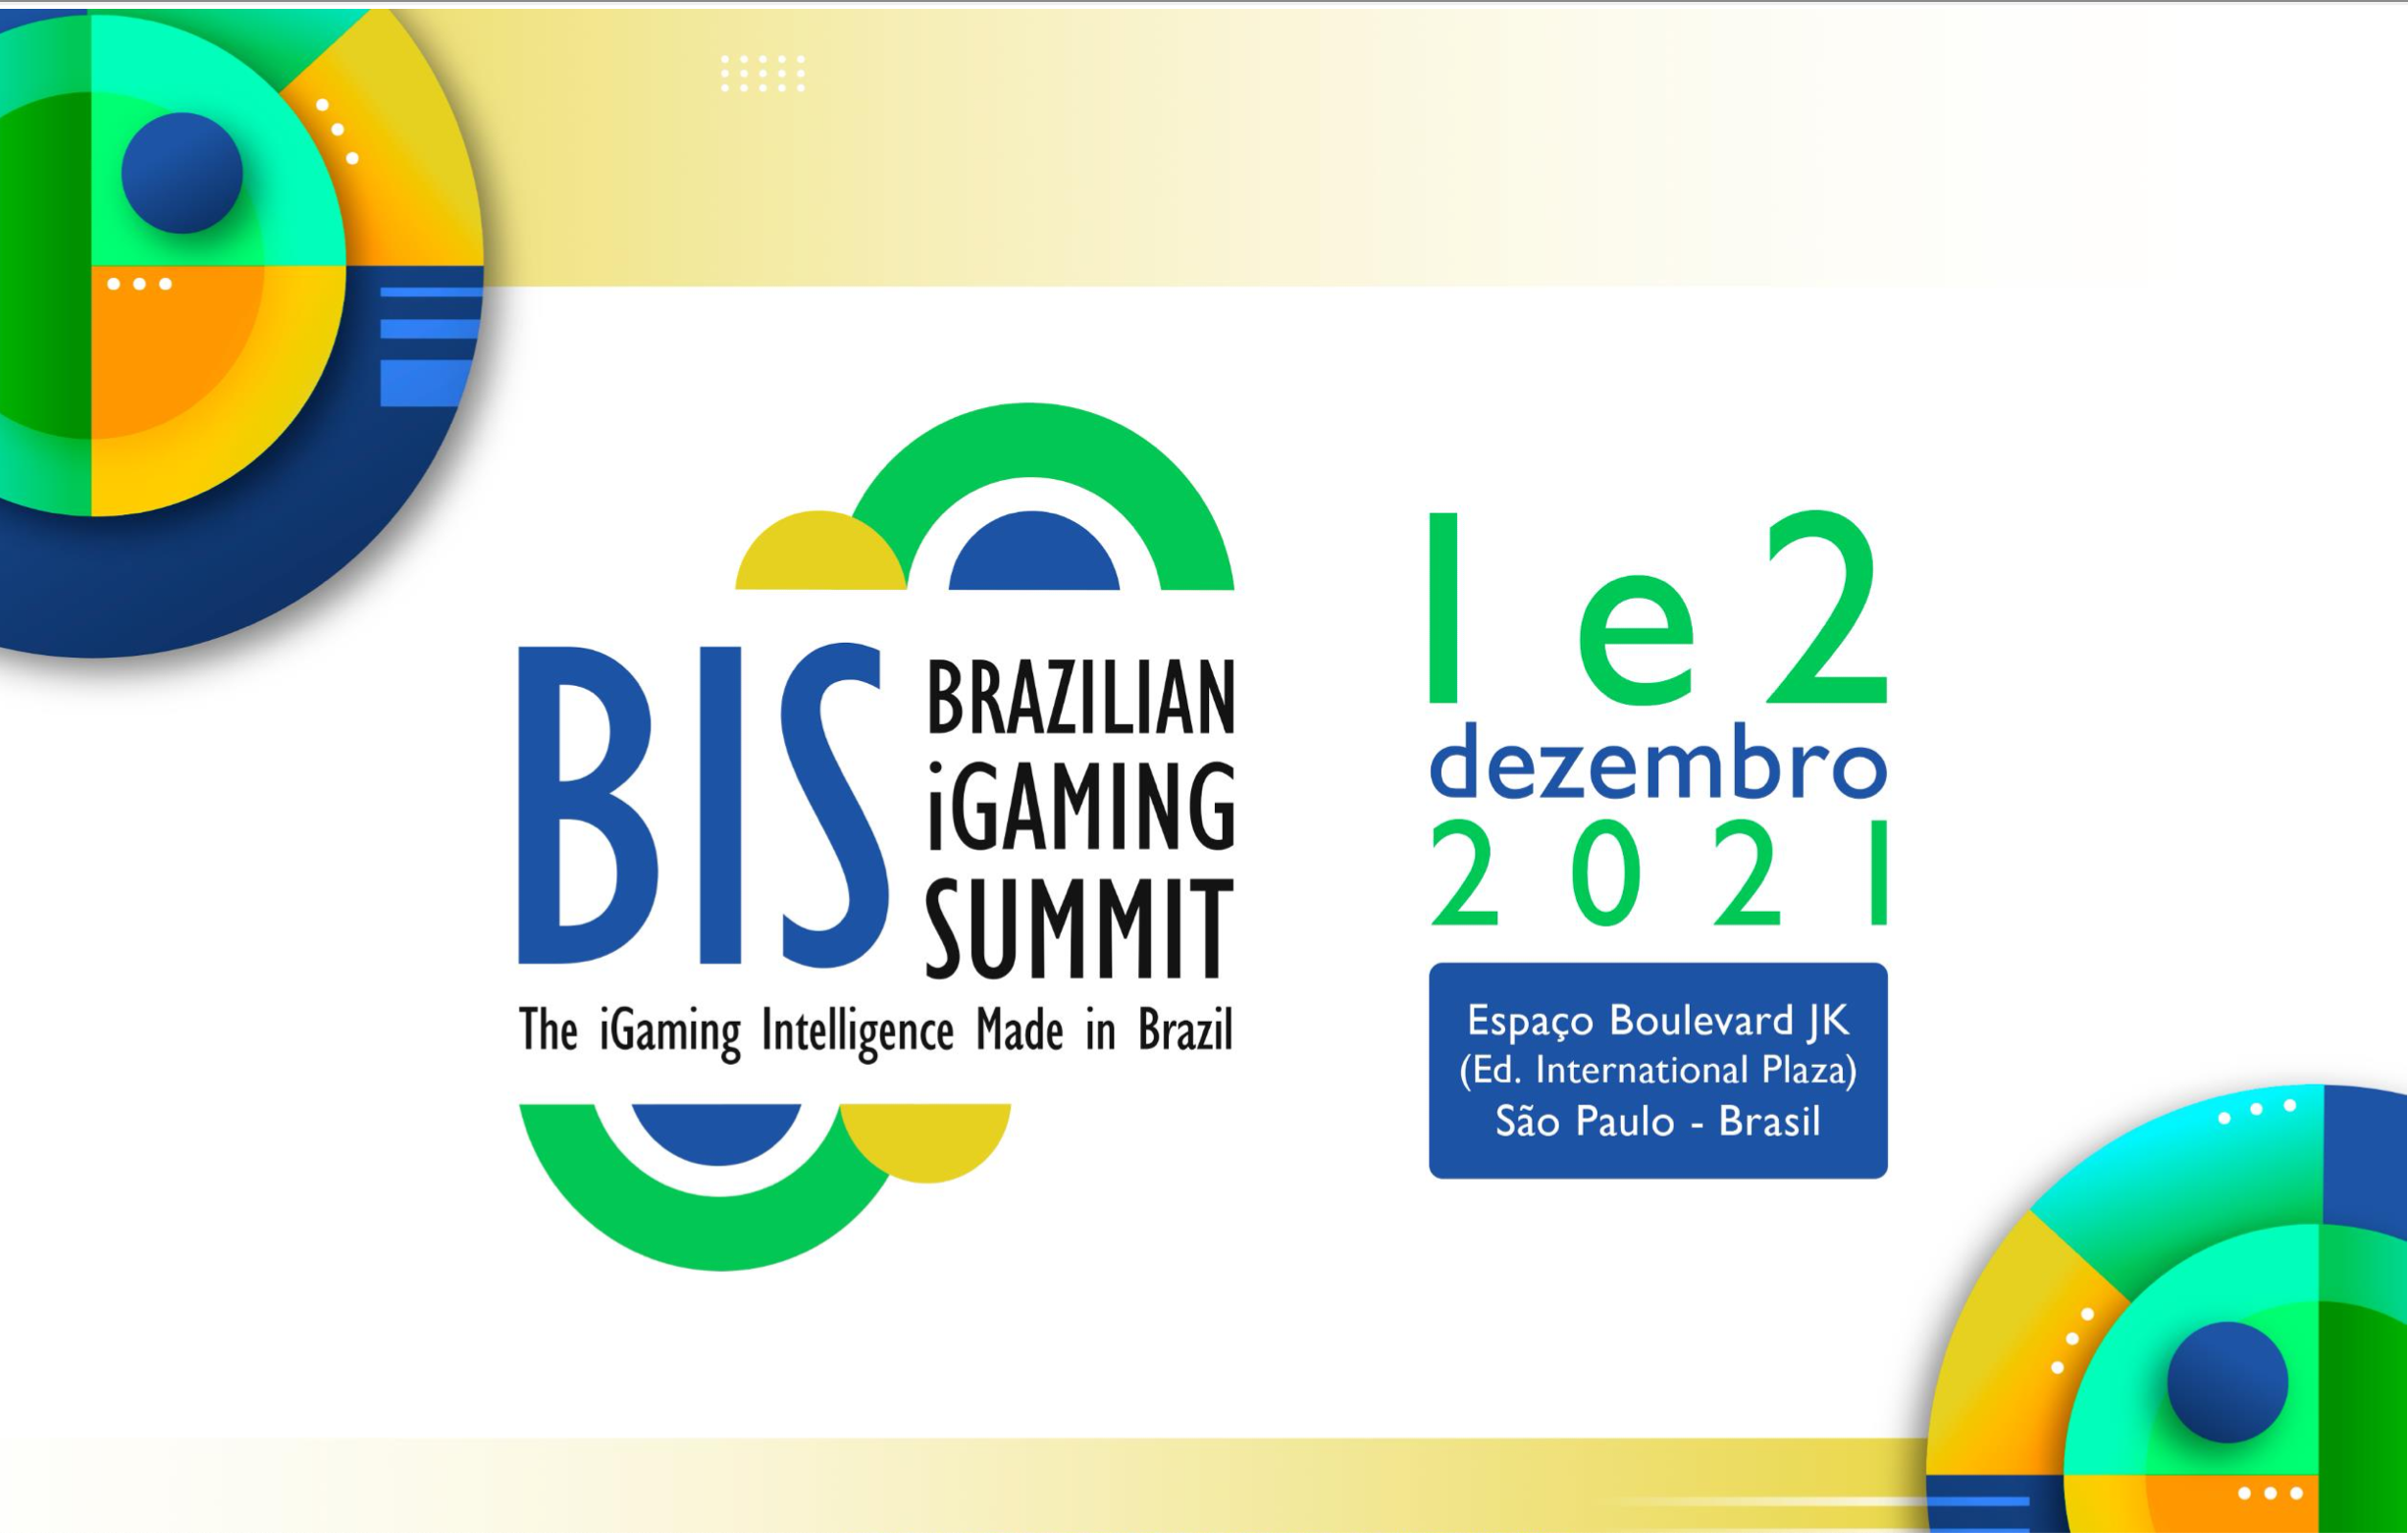 Brazilian iGaming Summit